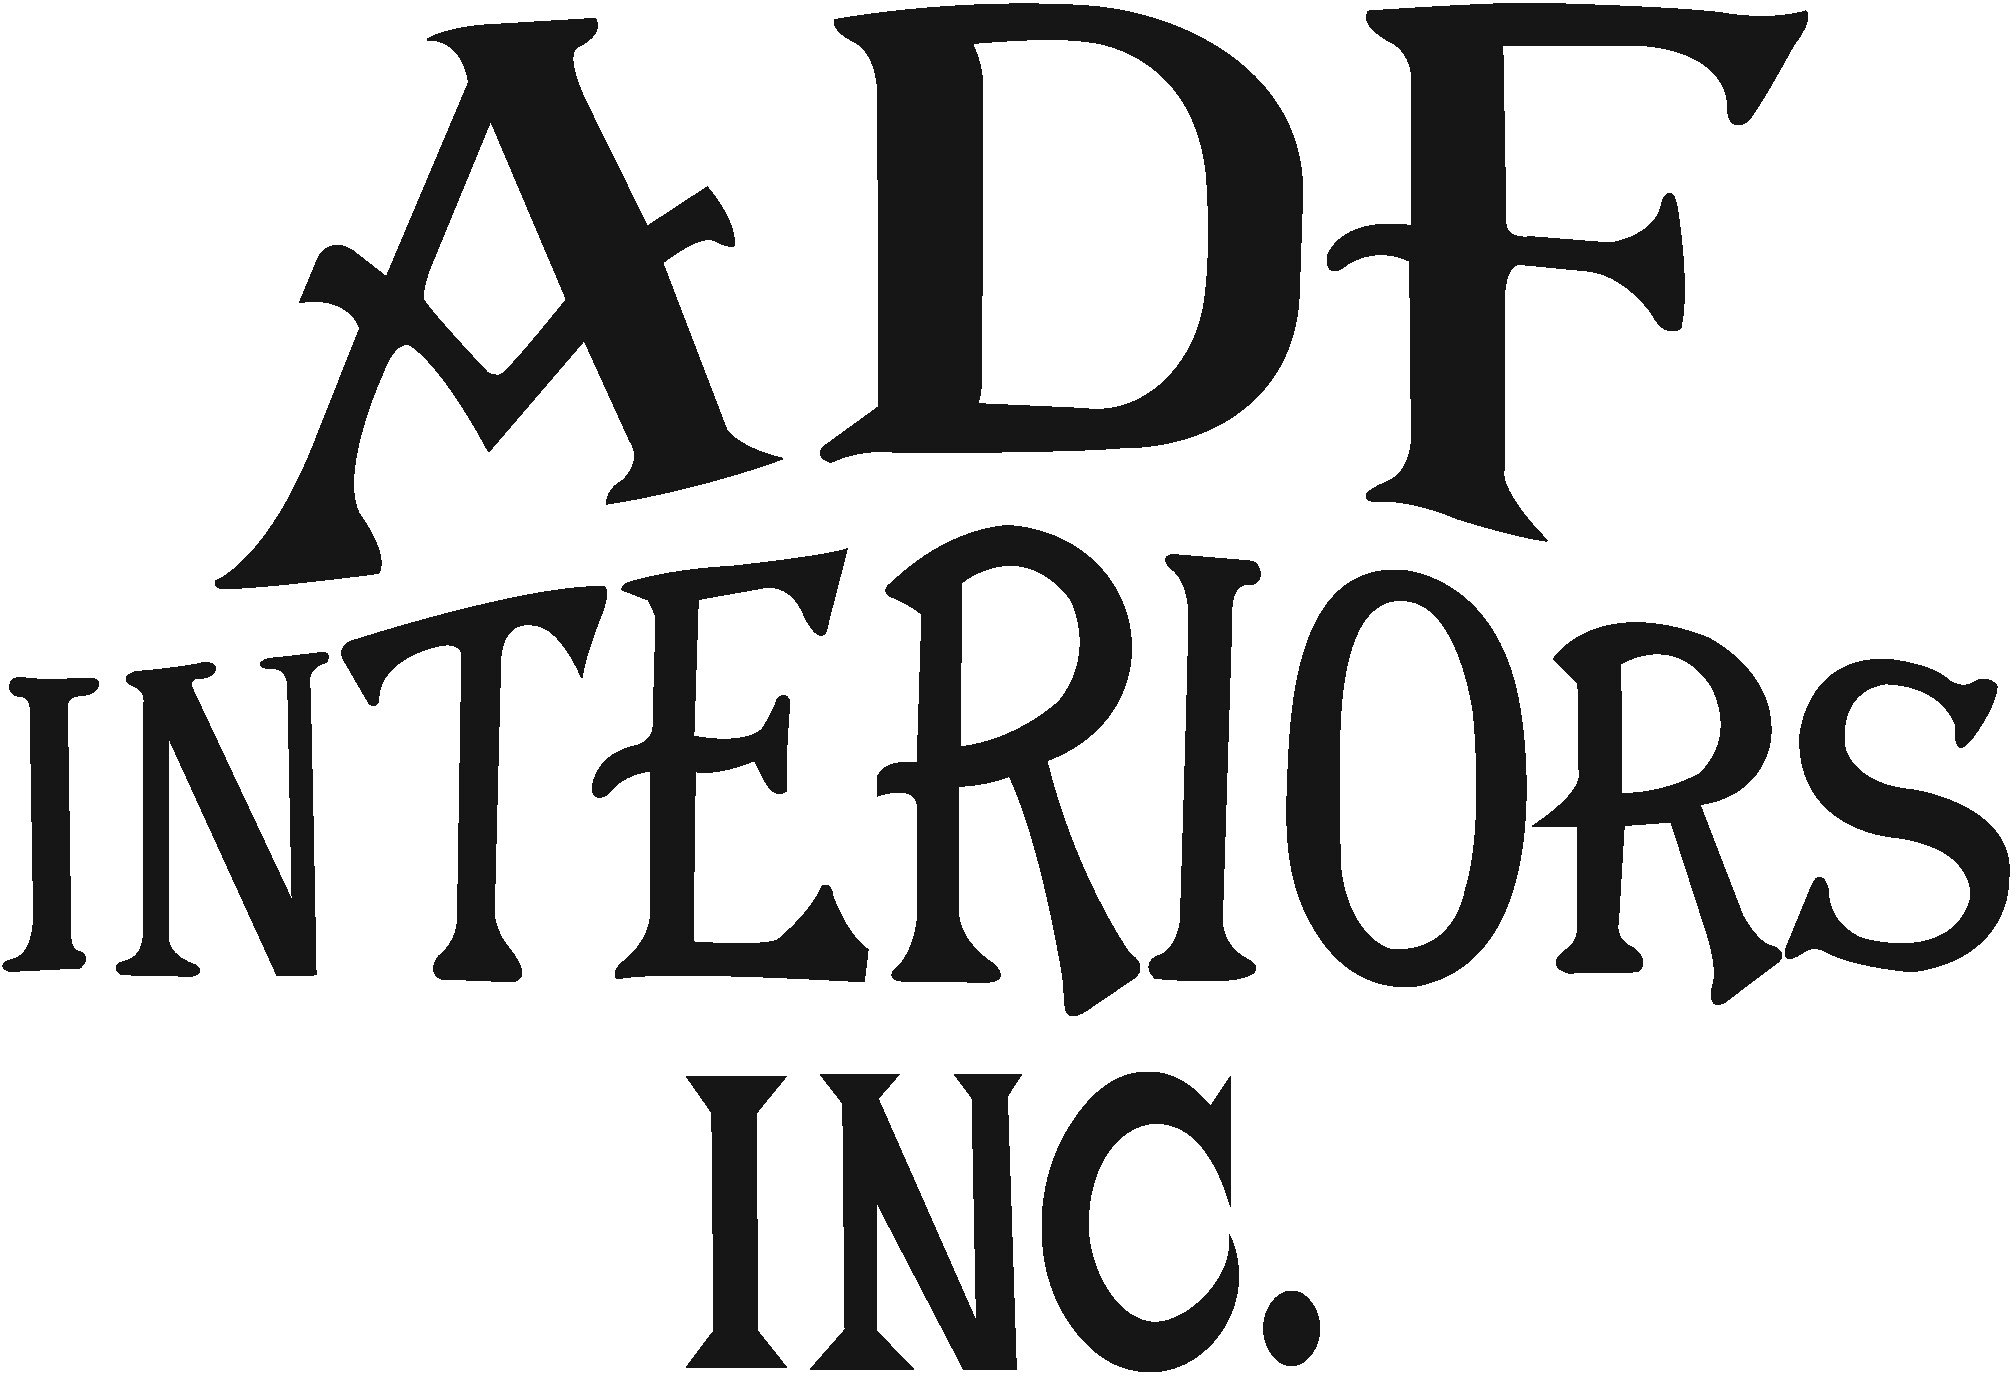 ADF Interiors